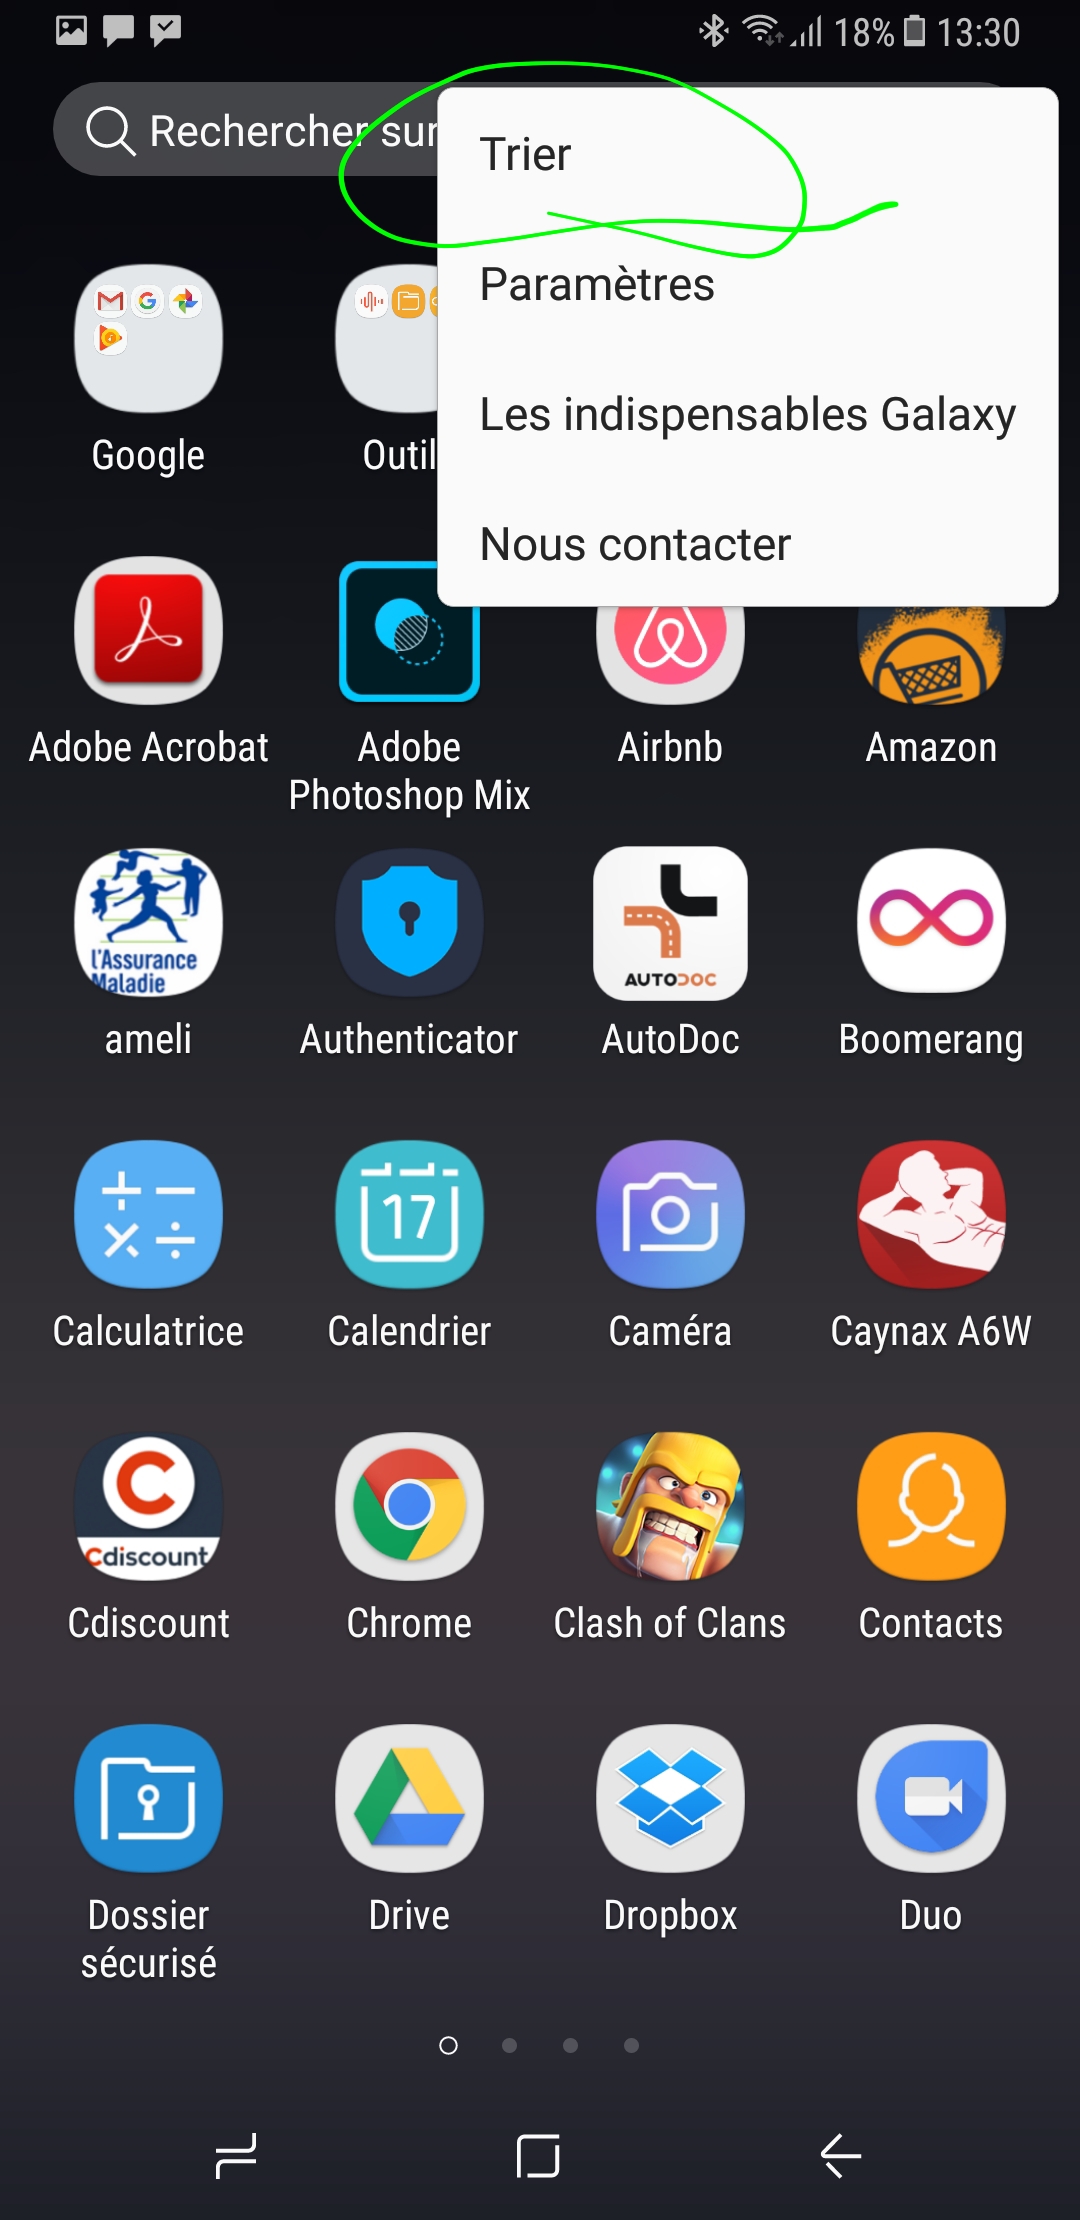 Résolu : Mise à jour android 6.0 samsung J3 2016 - Samsung Community